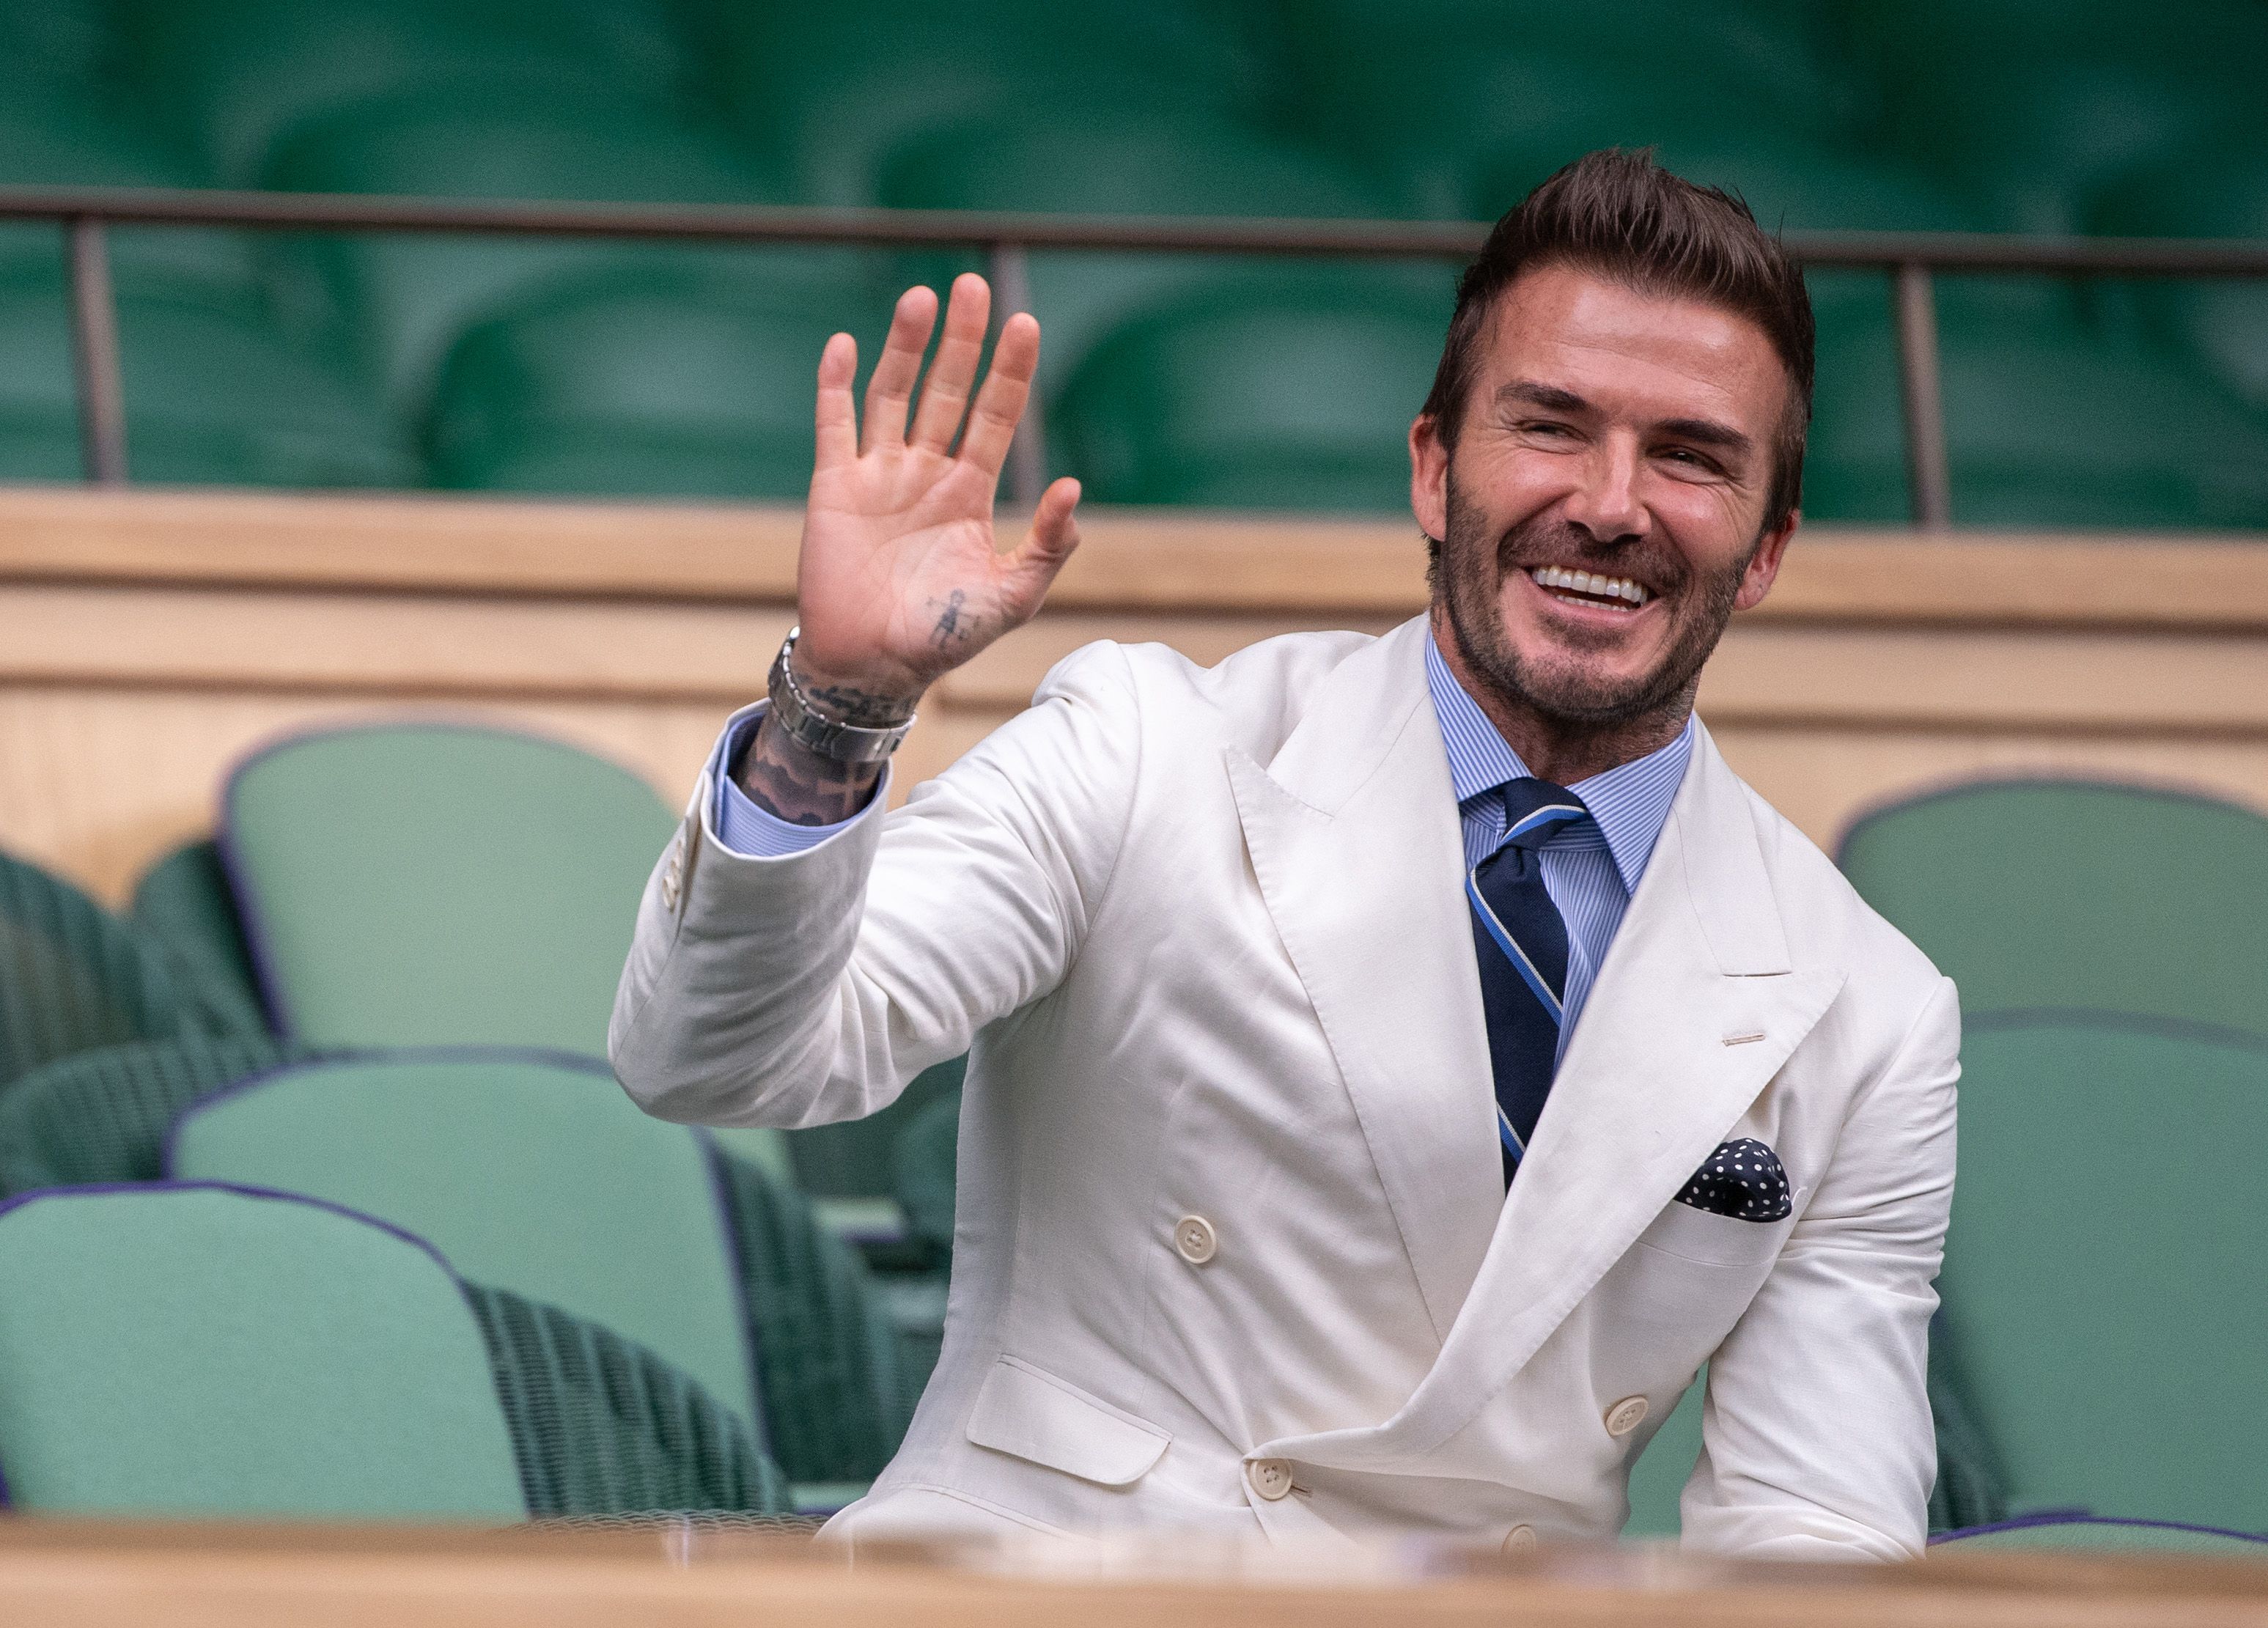 David Beckham wearing a white suit while waving